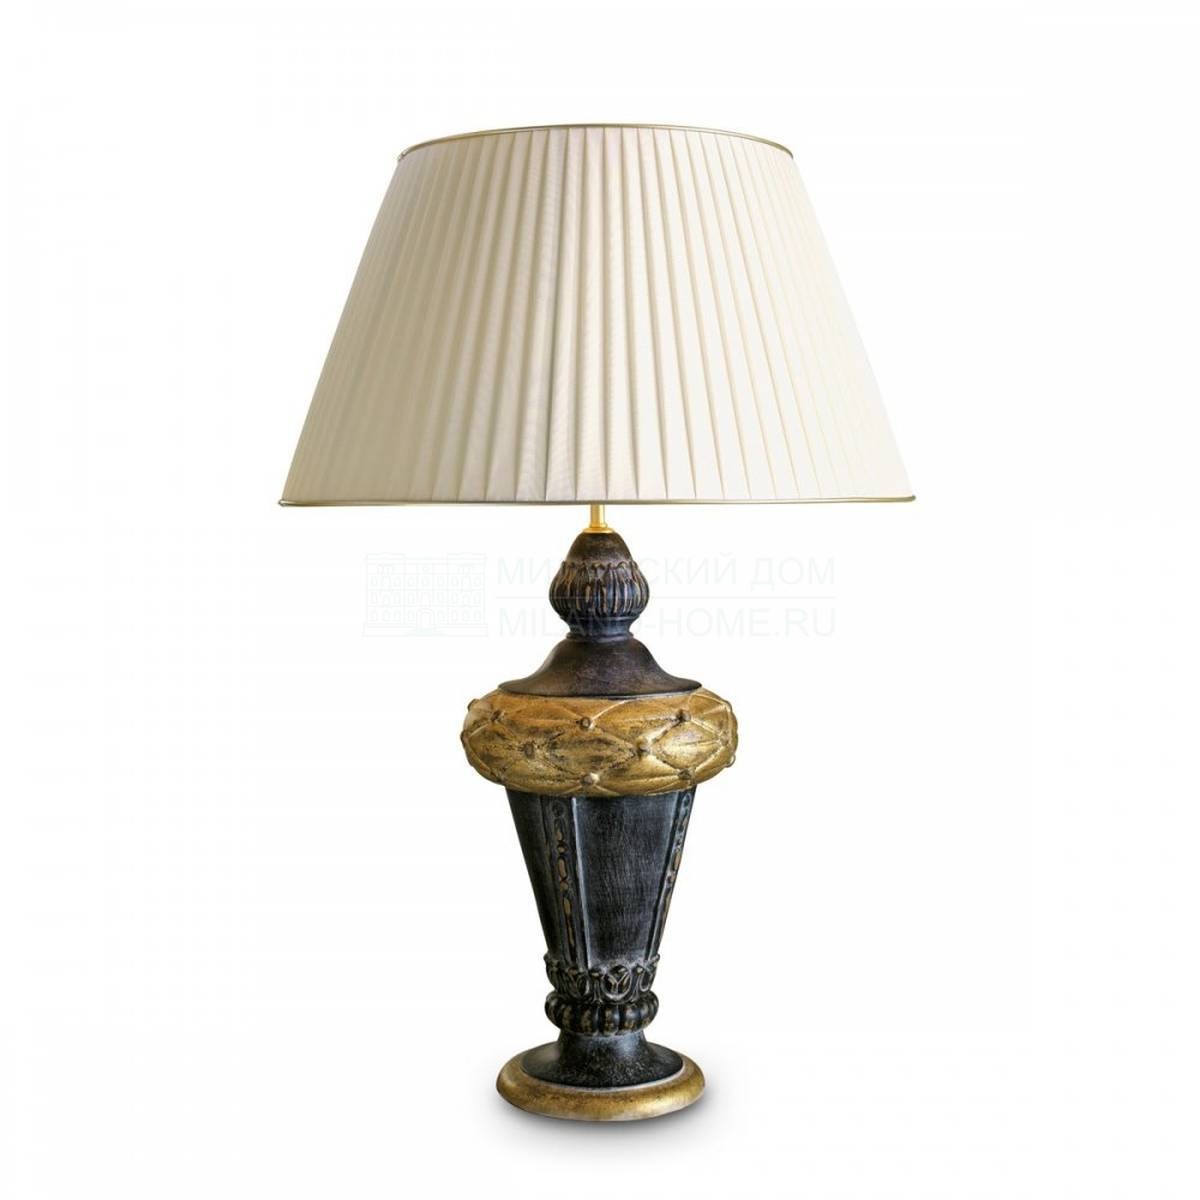 Настольная лампа Morena table lamp из Италии фабрики MARIONI